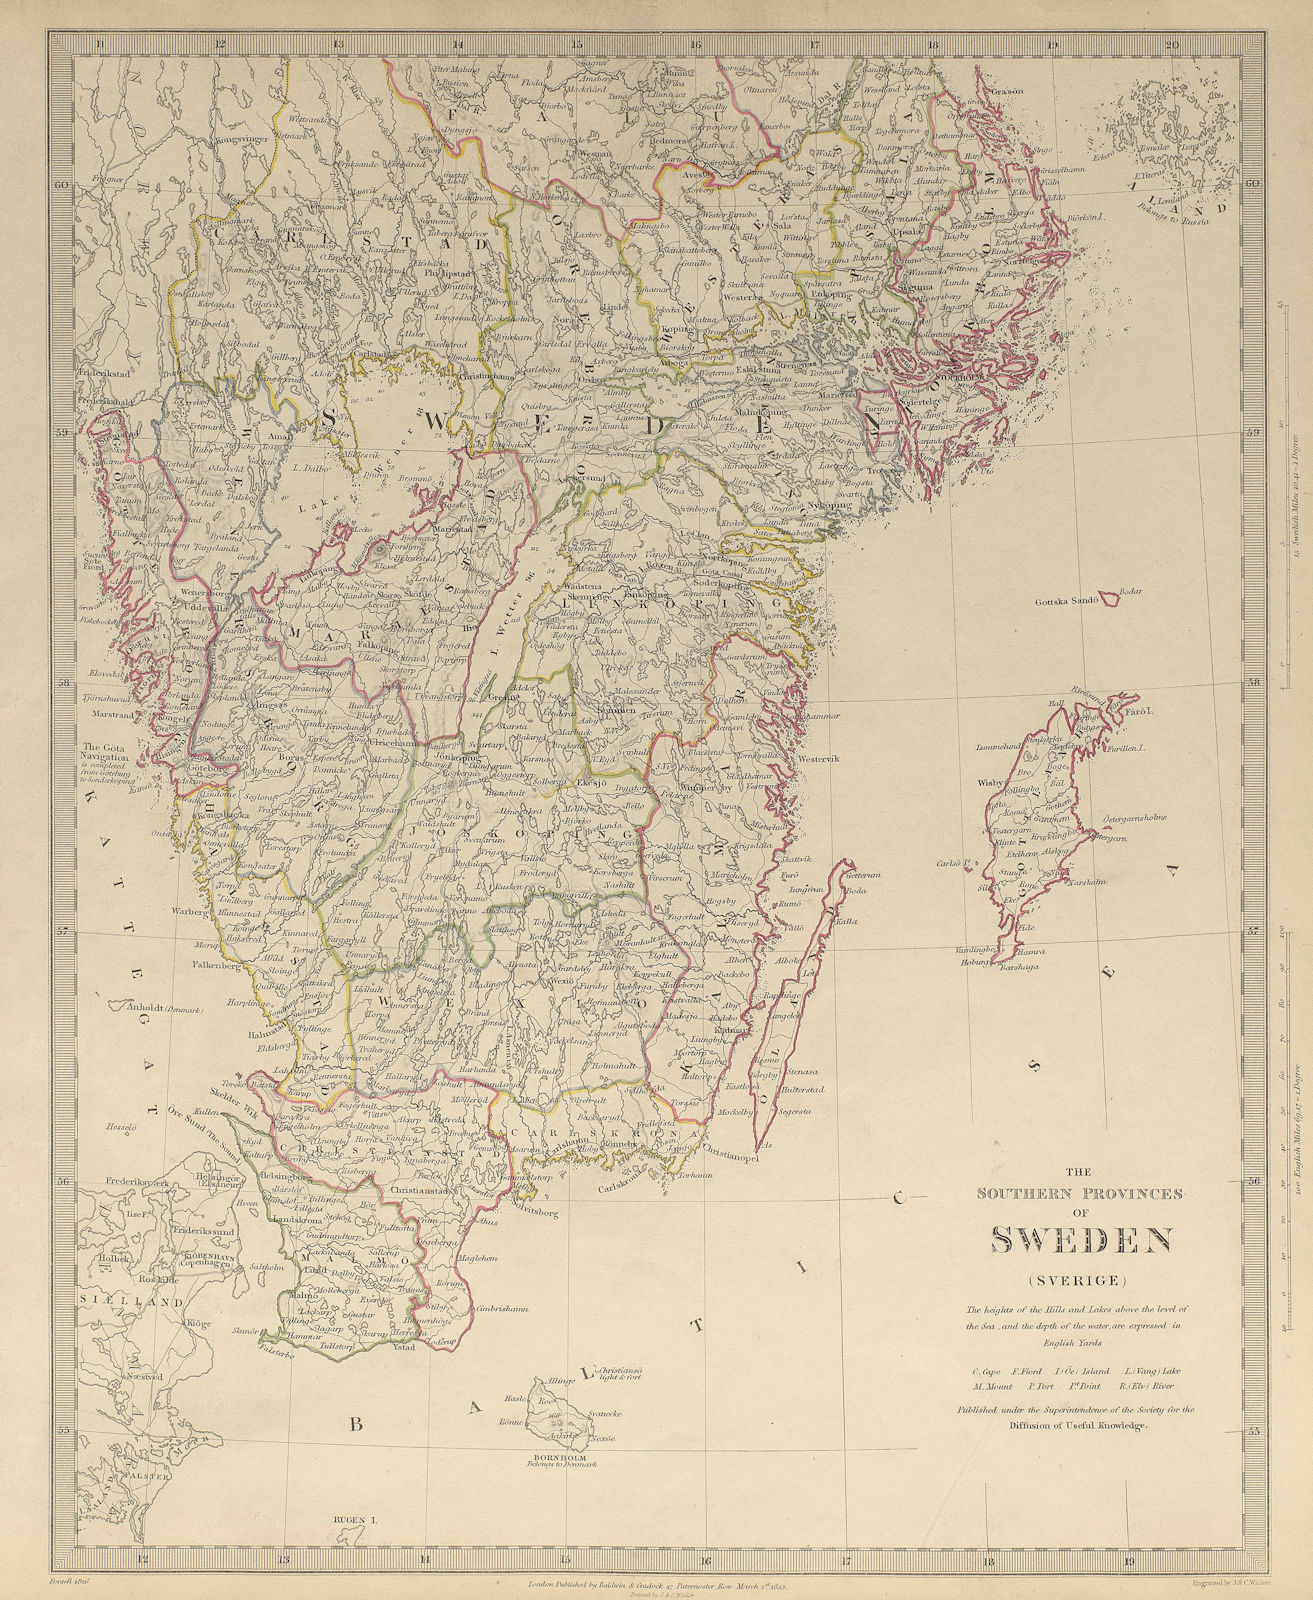 SWEDEN. the Southern Provinces of Sweden (Sverige) . SDUK 1844 old antique map